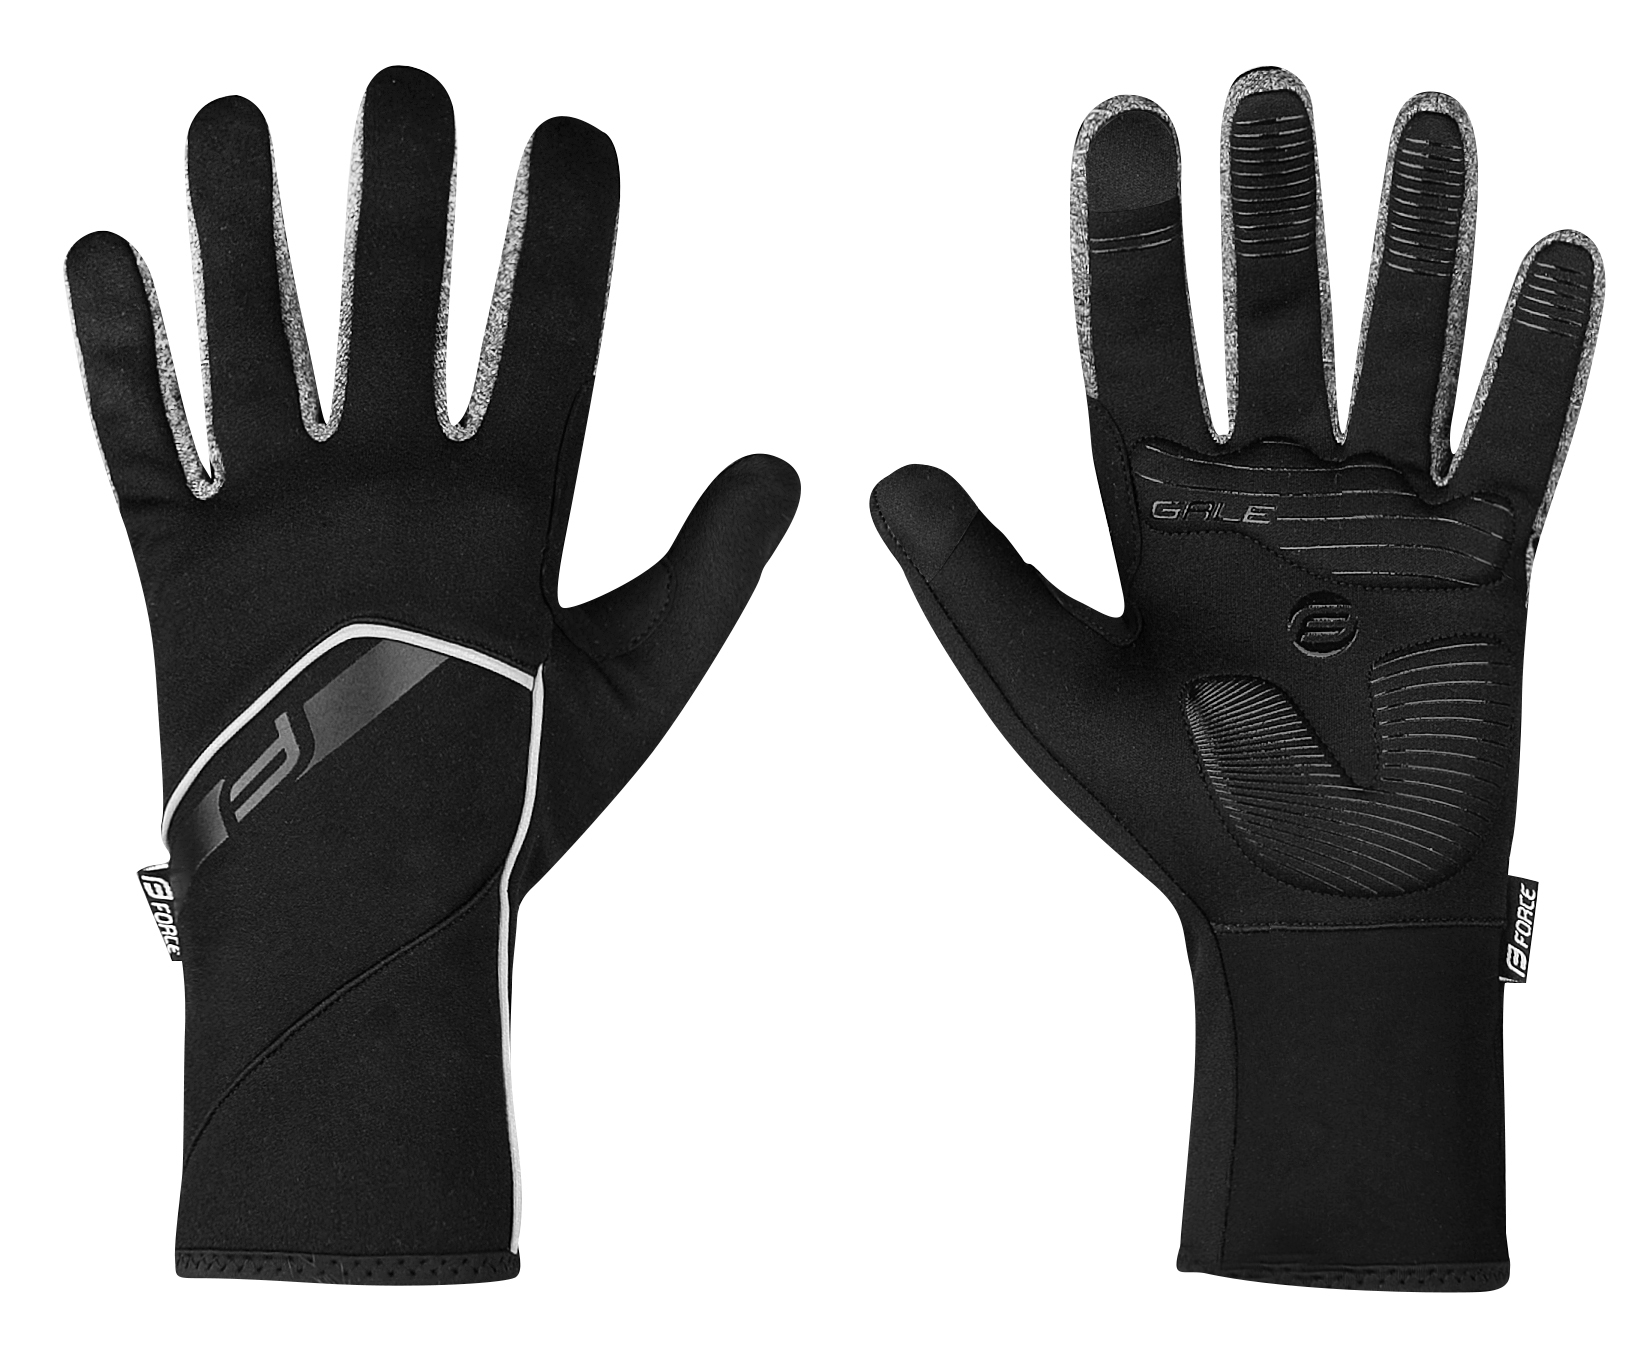 FORCE rukavice F GALE softshell, jaro-podzim, černé Velikost: XS